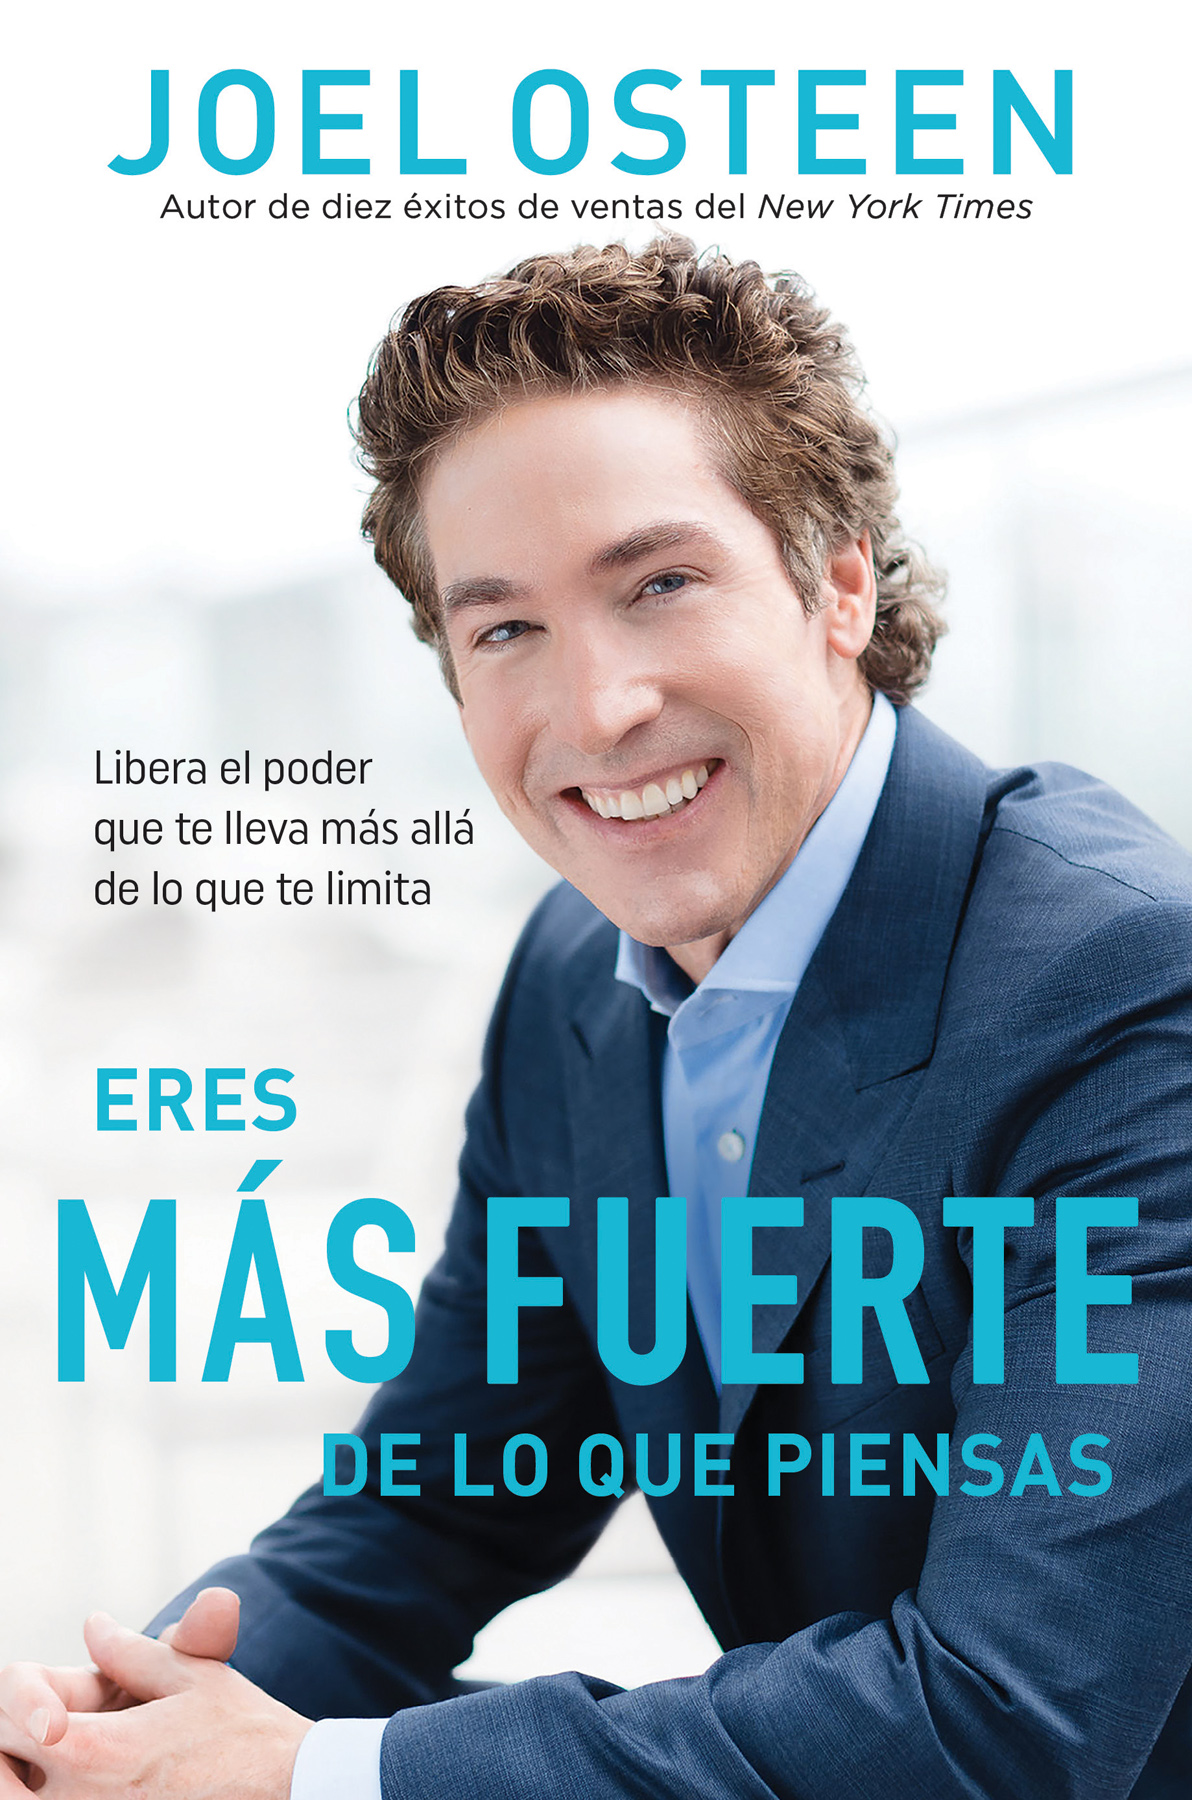 Copyright edición en español 2021 por Hachette Book Group Inc Publicado en - photo 1